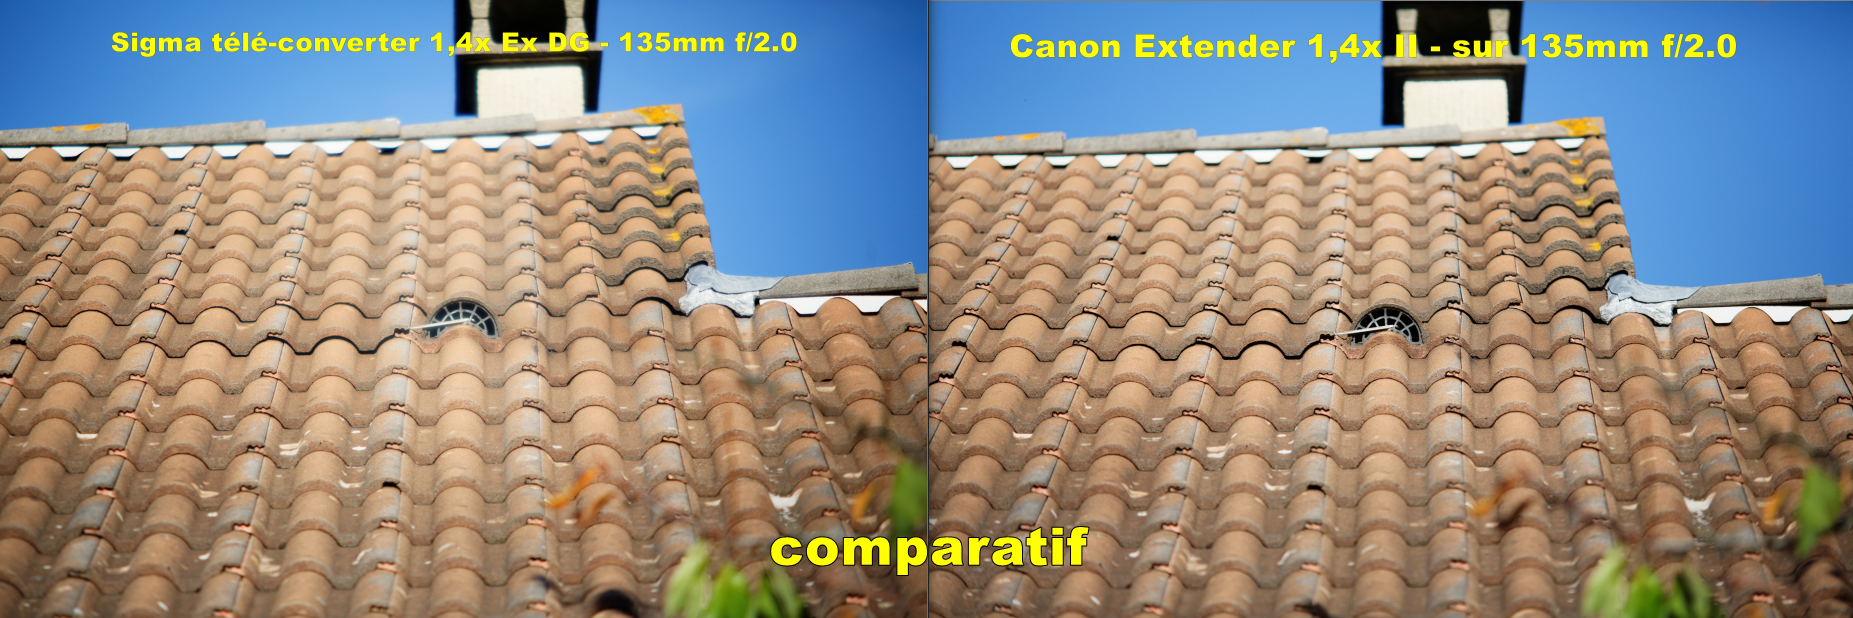 Match comparatif Sigma Tele-Converter 1.4x Ex DG contre Canon extender 1,4x II par Beanico